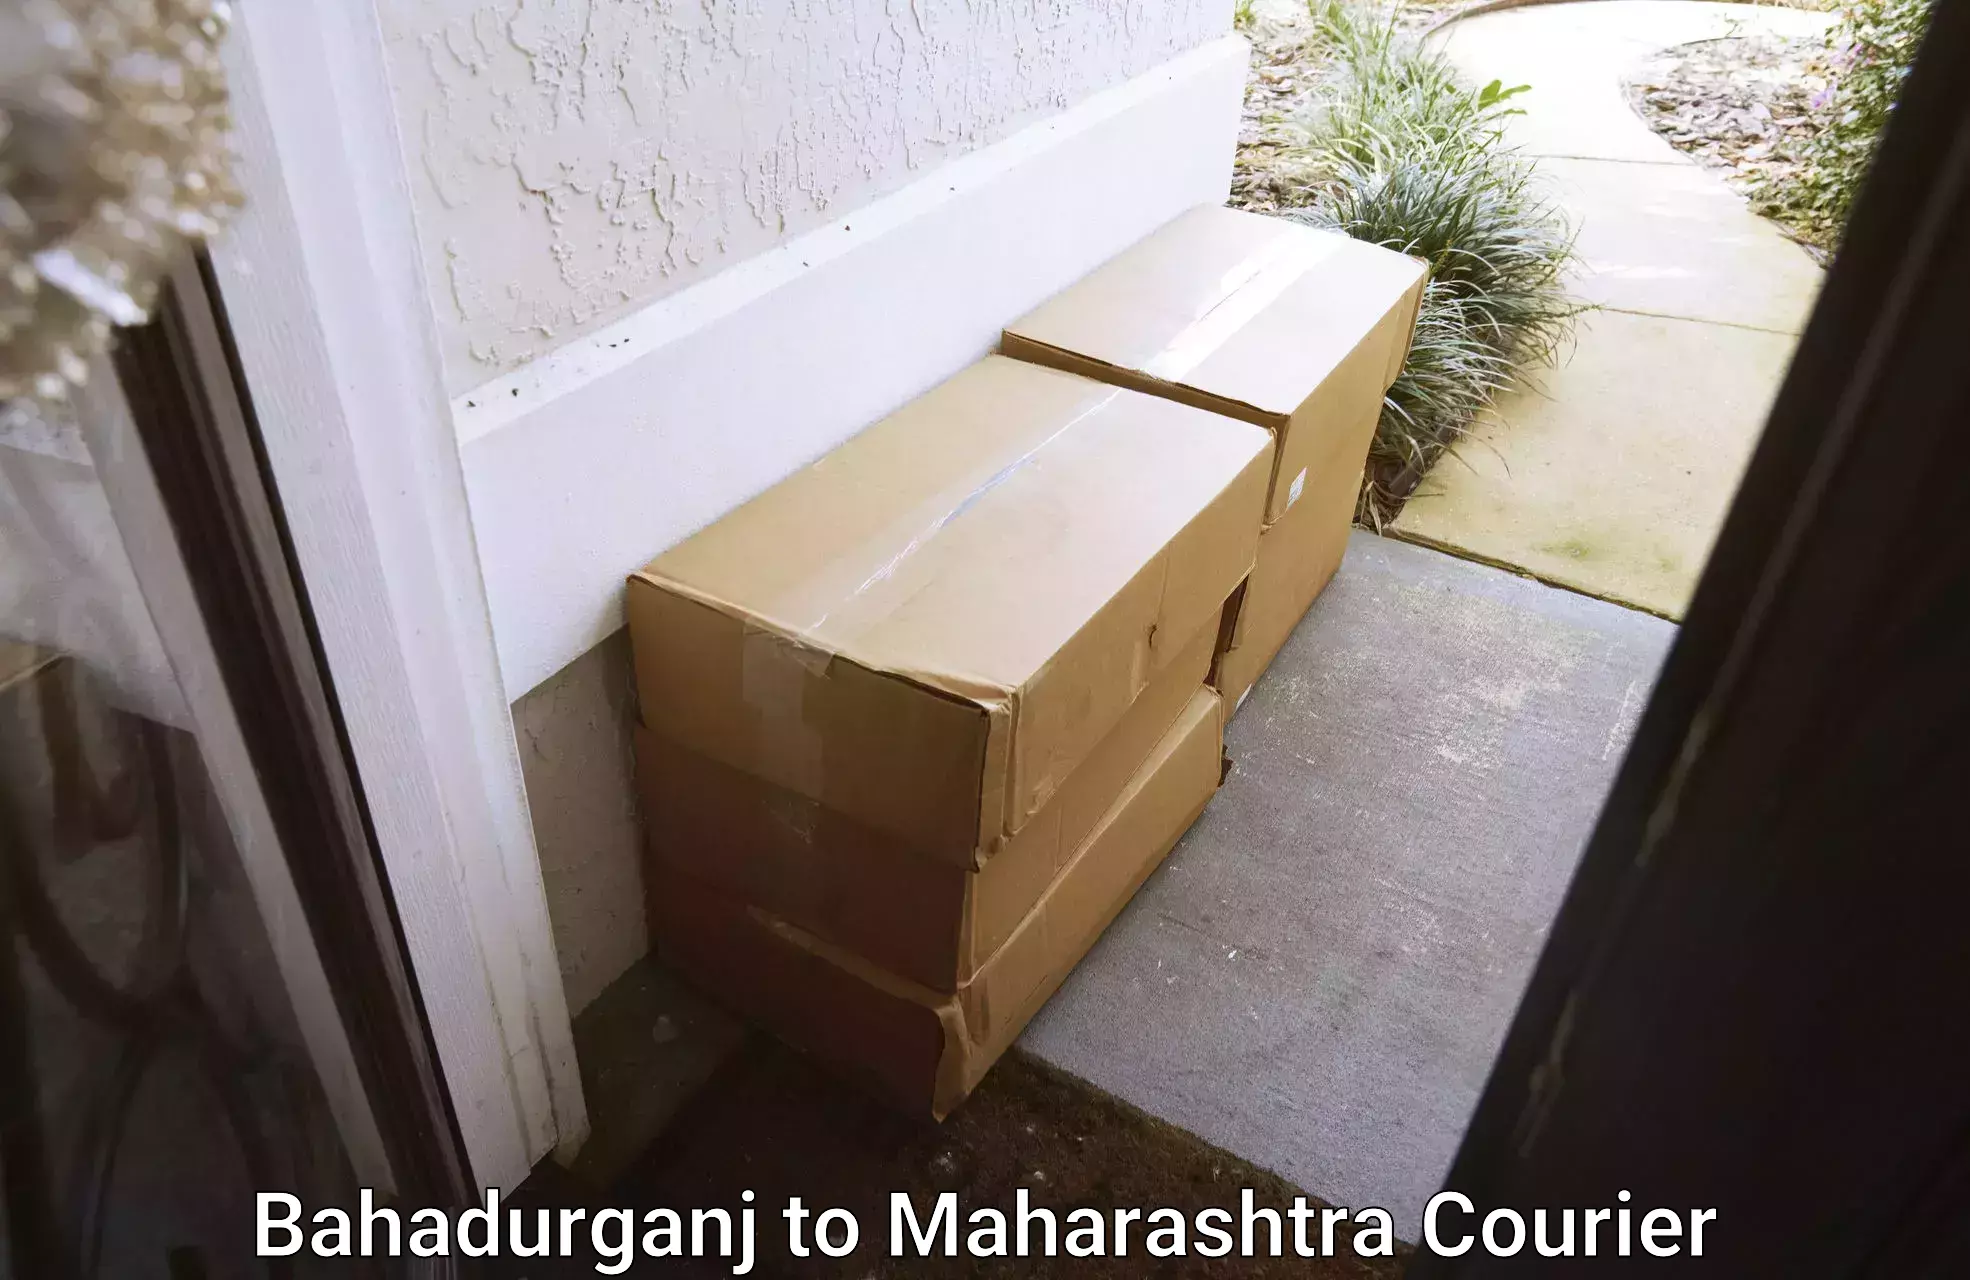 Trusted moving company Bahadurganj to Maharashtra